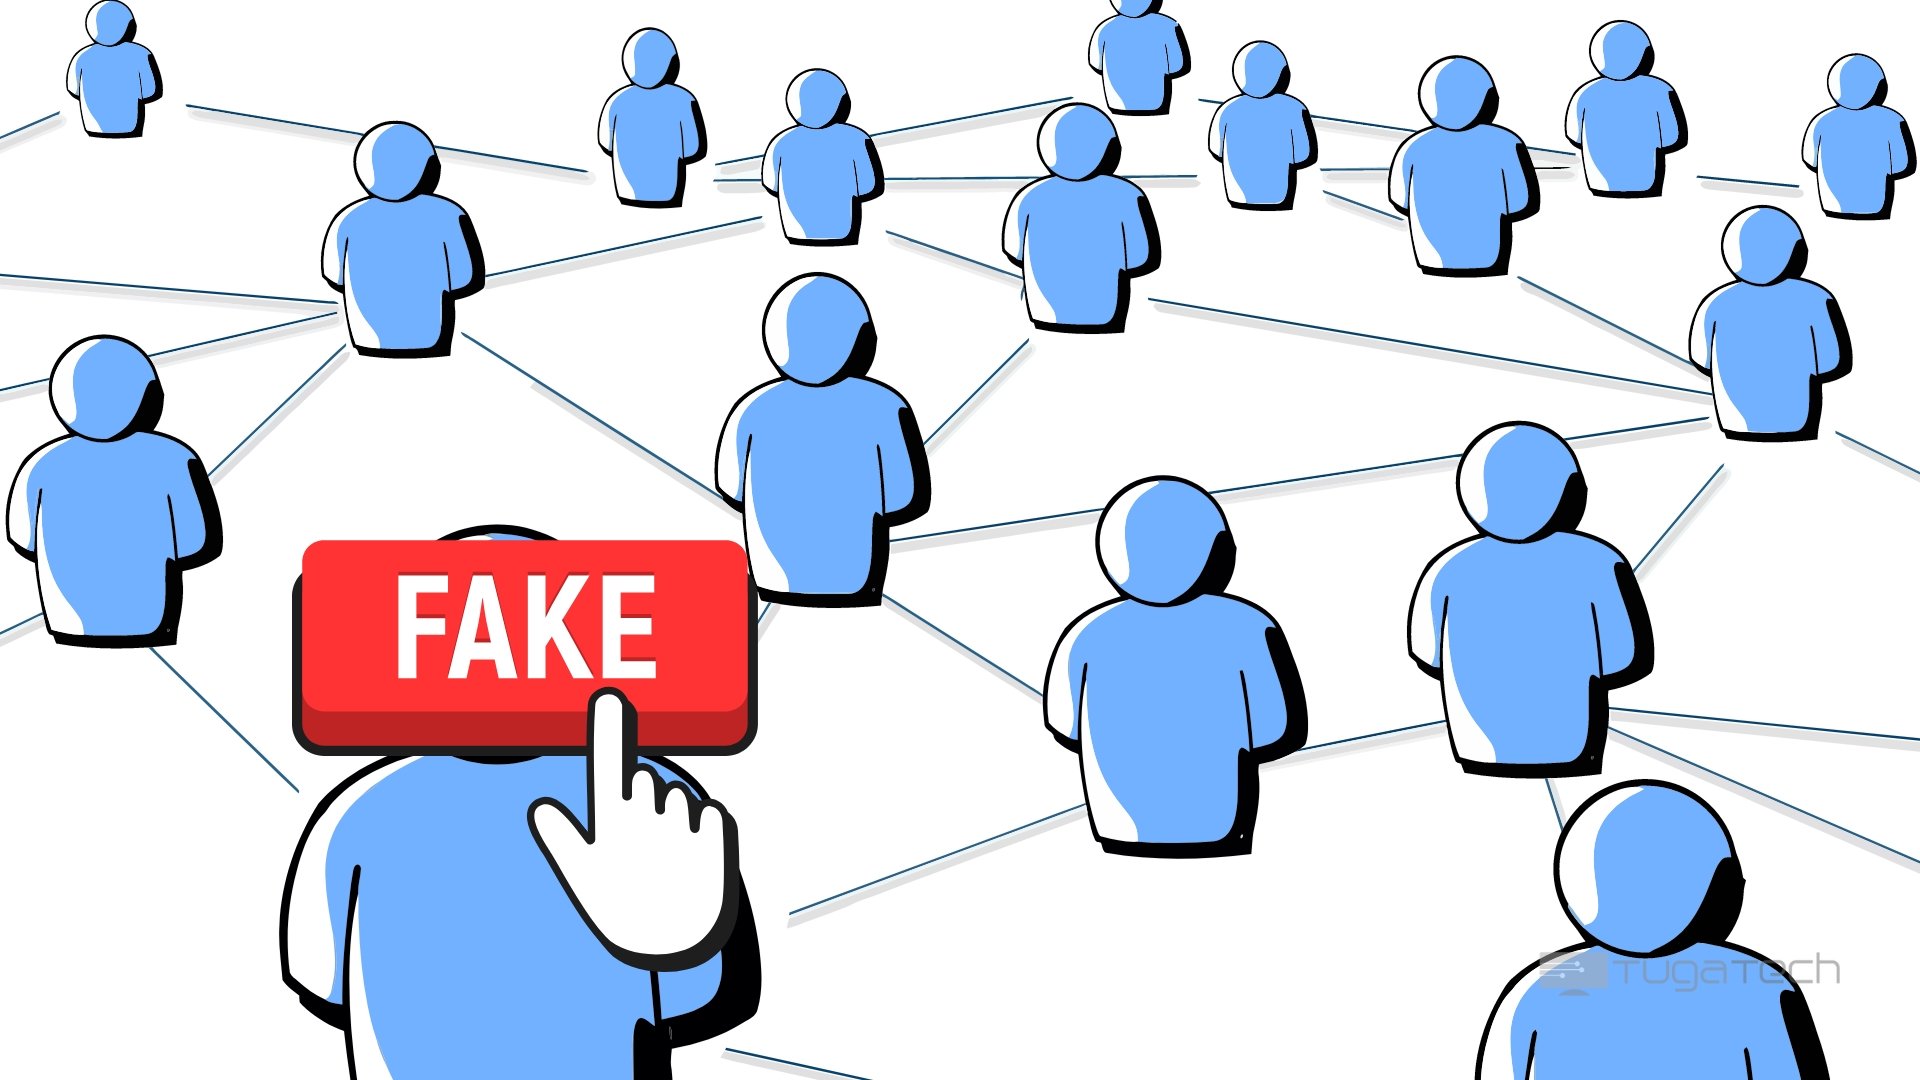 IRL era uma rede social “unicórnio”, mas com 95% de utilizadores falsos